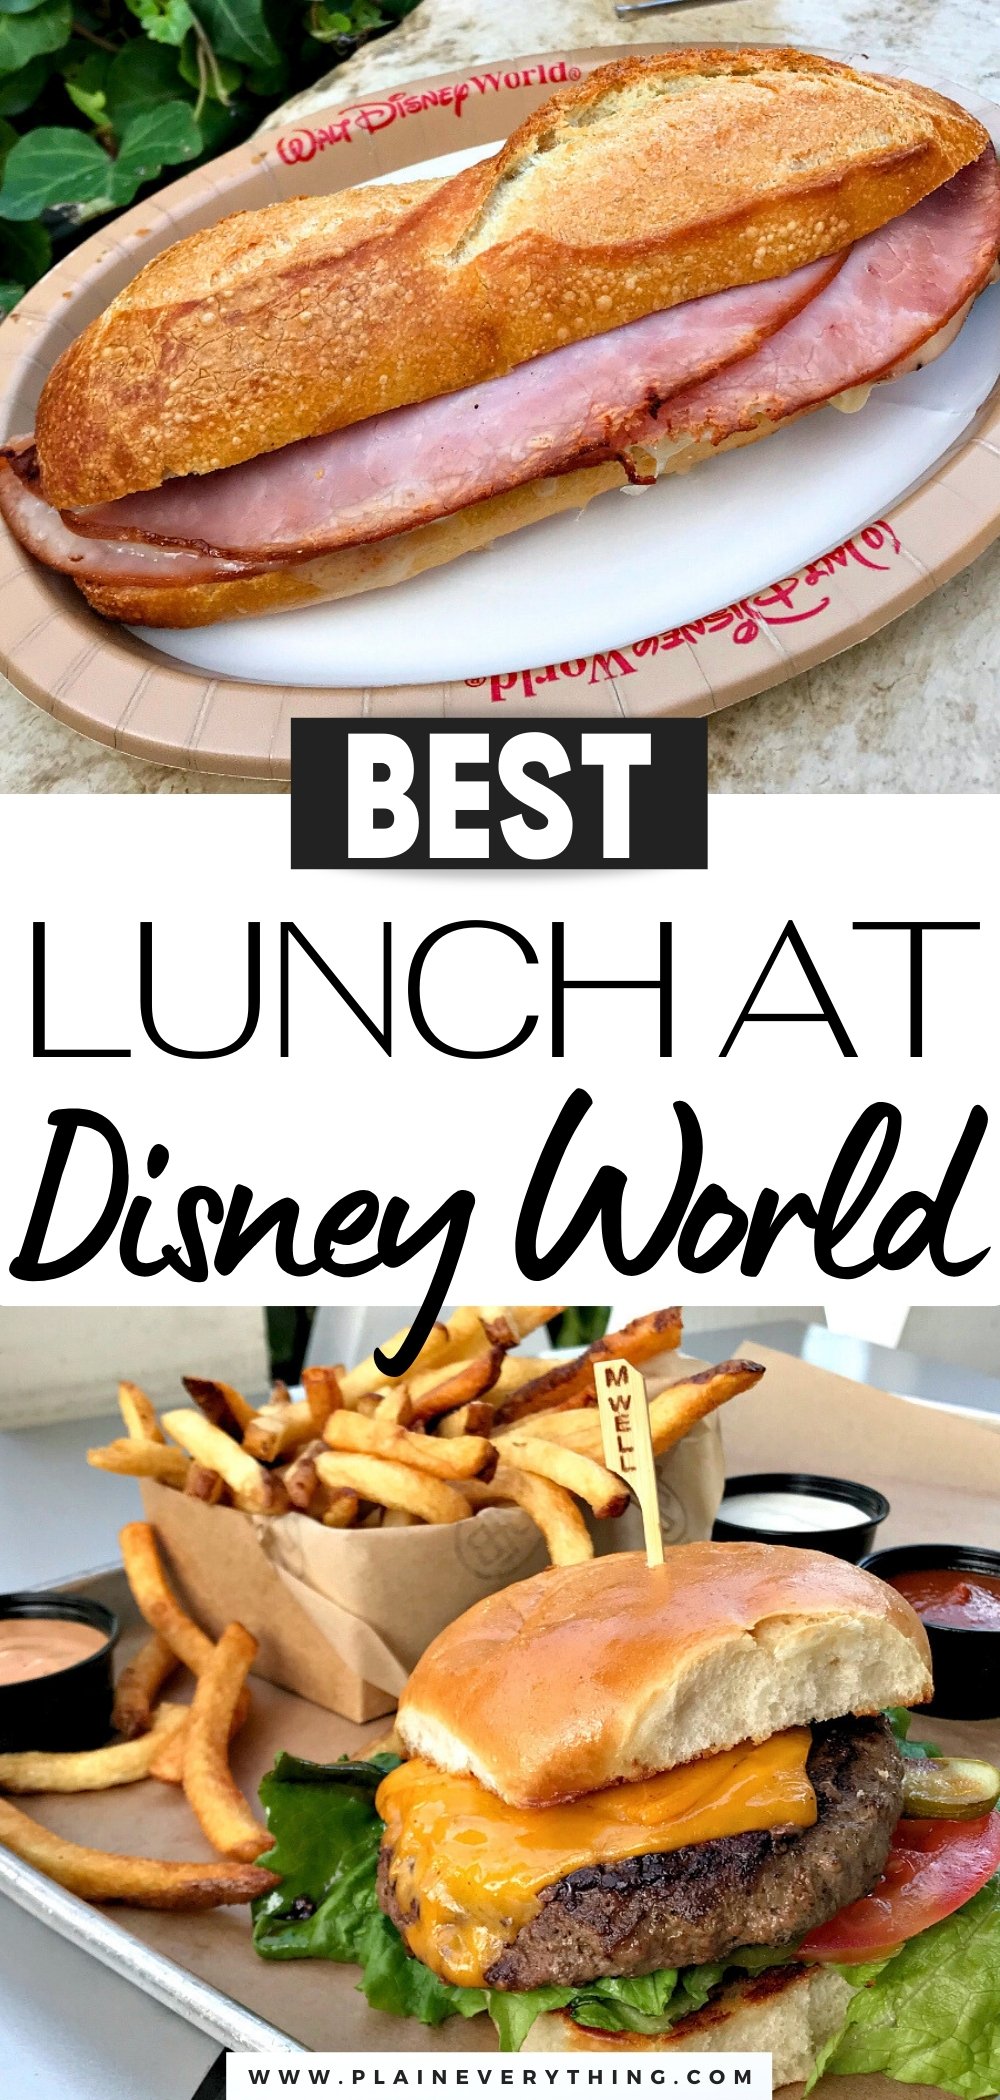 Best Lunch at Disney World